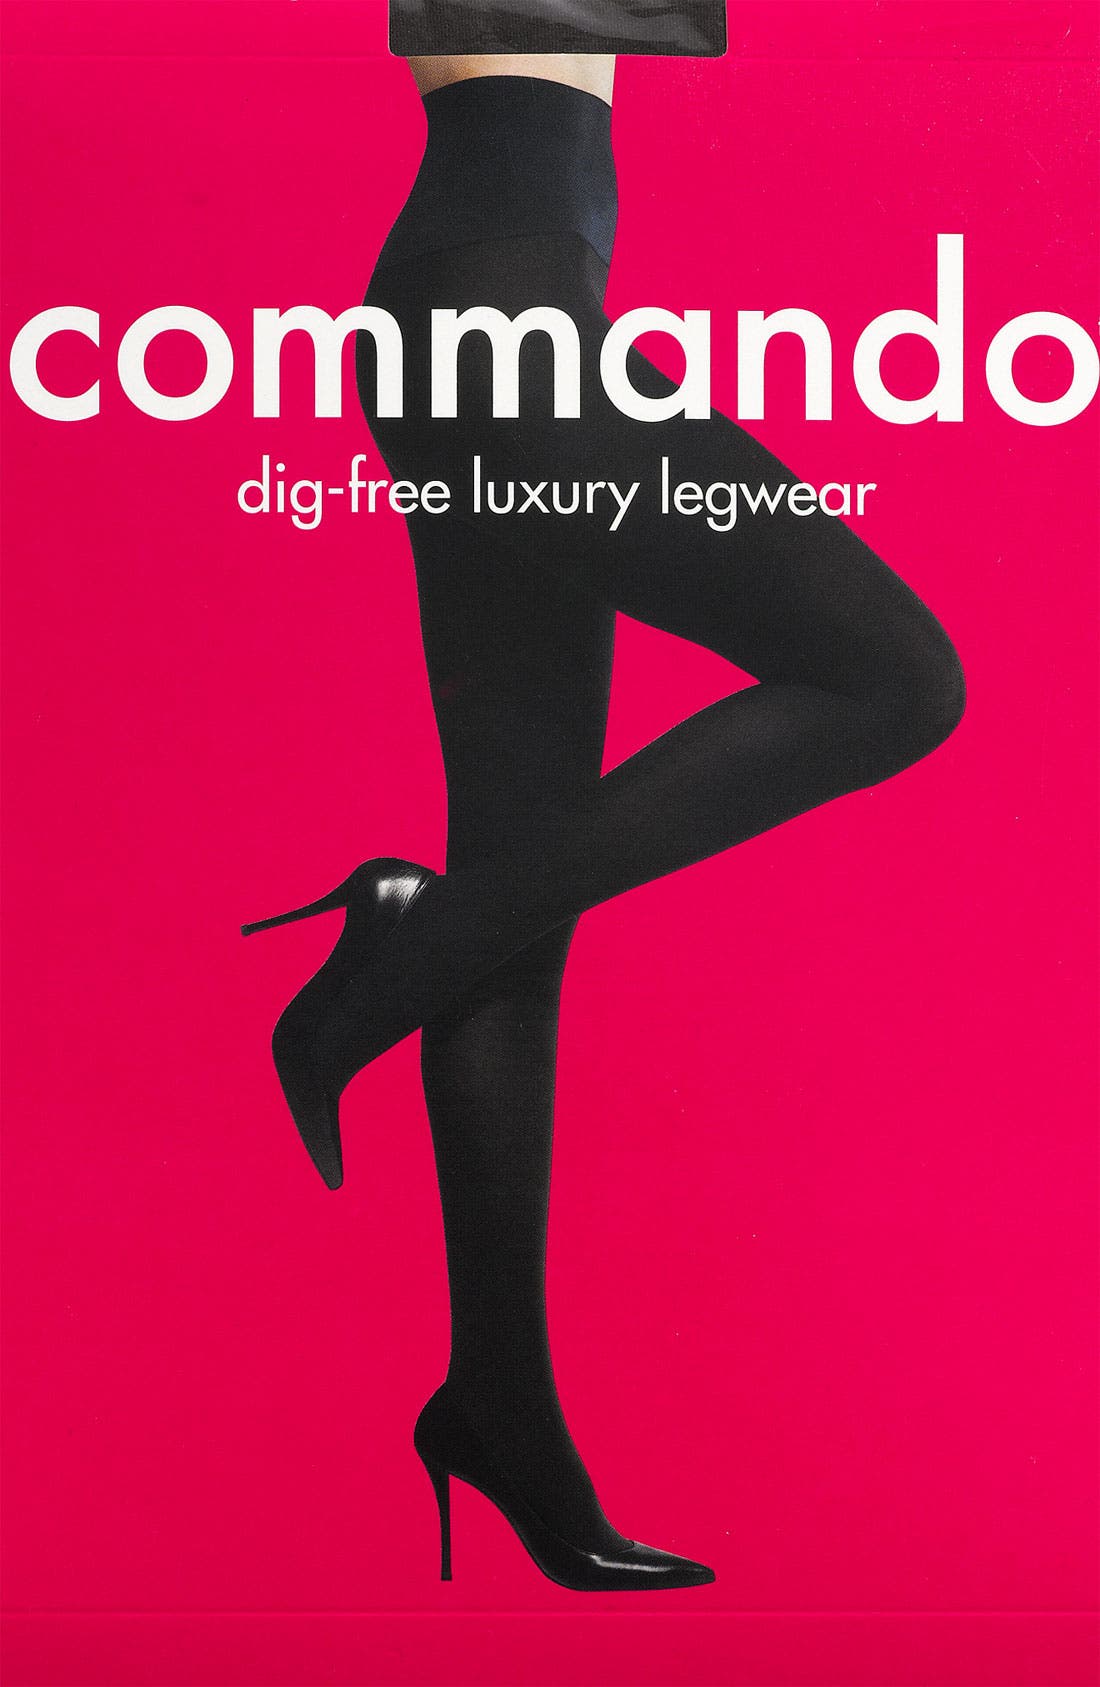 Commando Dig Free Luxury legwear